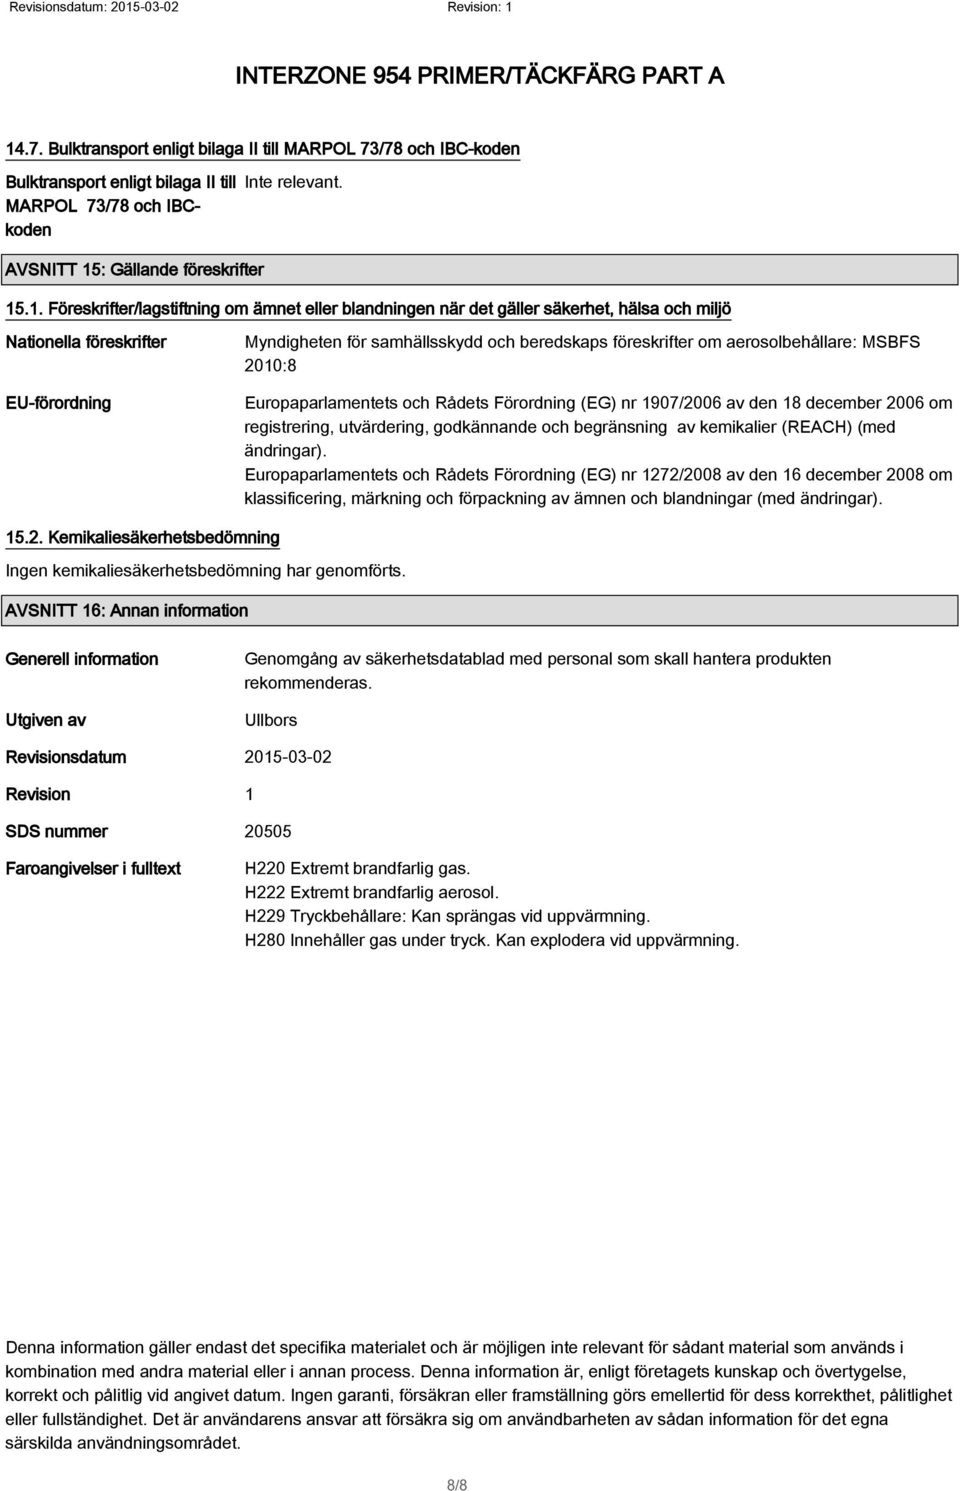 aerosolbehållare: MSBFS 2010:8 Europaparlamentets och Rådets Förordning (EG) nr 1907/2006 av den 18 december 2006 om registrering, utvärdering, godkännande och begränsning av kemikalier (REACH) (med